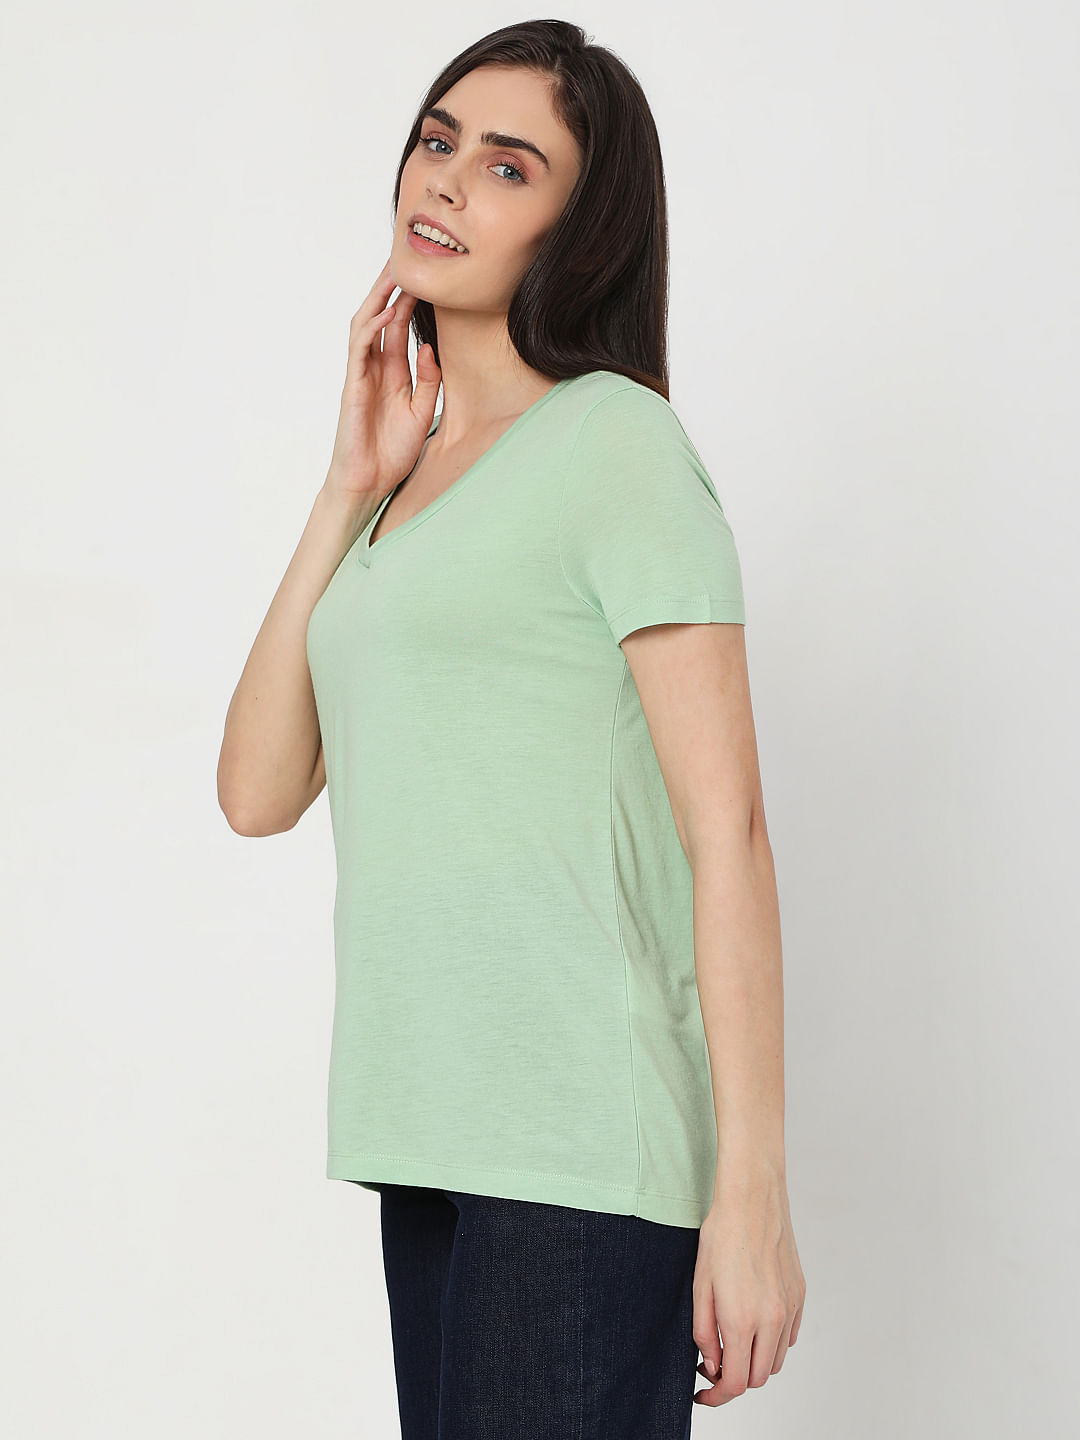 WOMEN FASHION Shirts & T-shirts Sequin Green L Vero Moda T-shirt discount 69% 